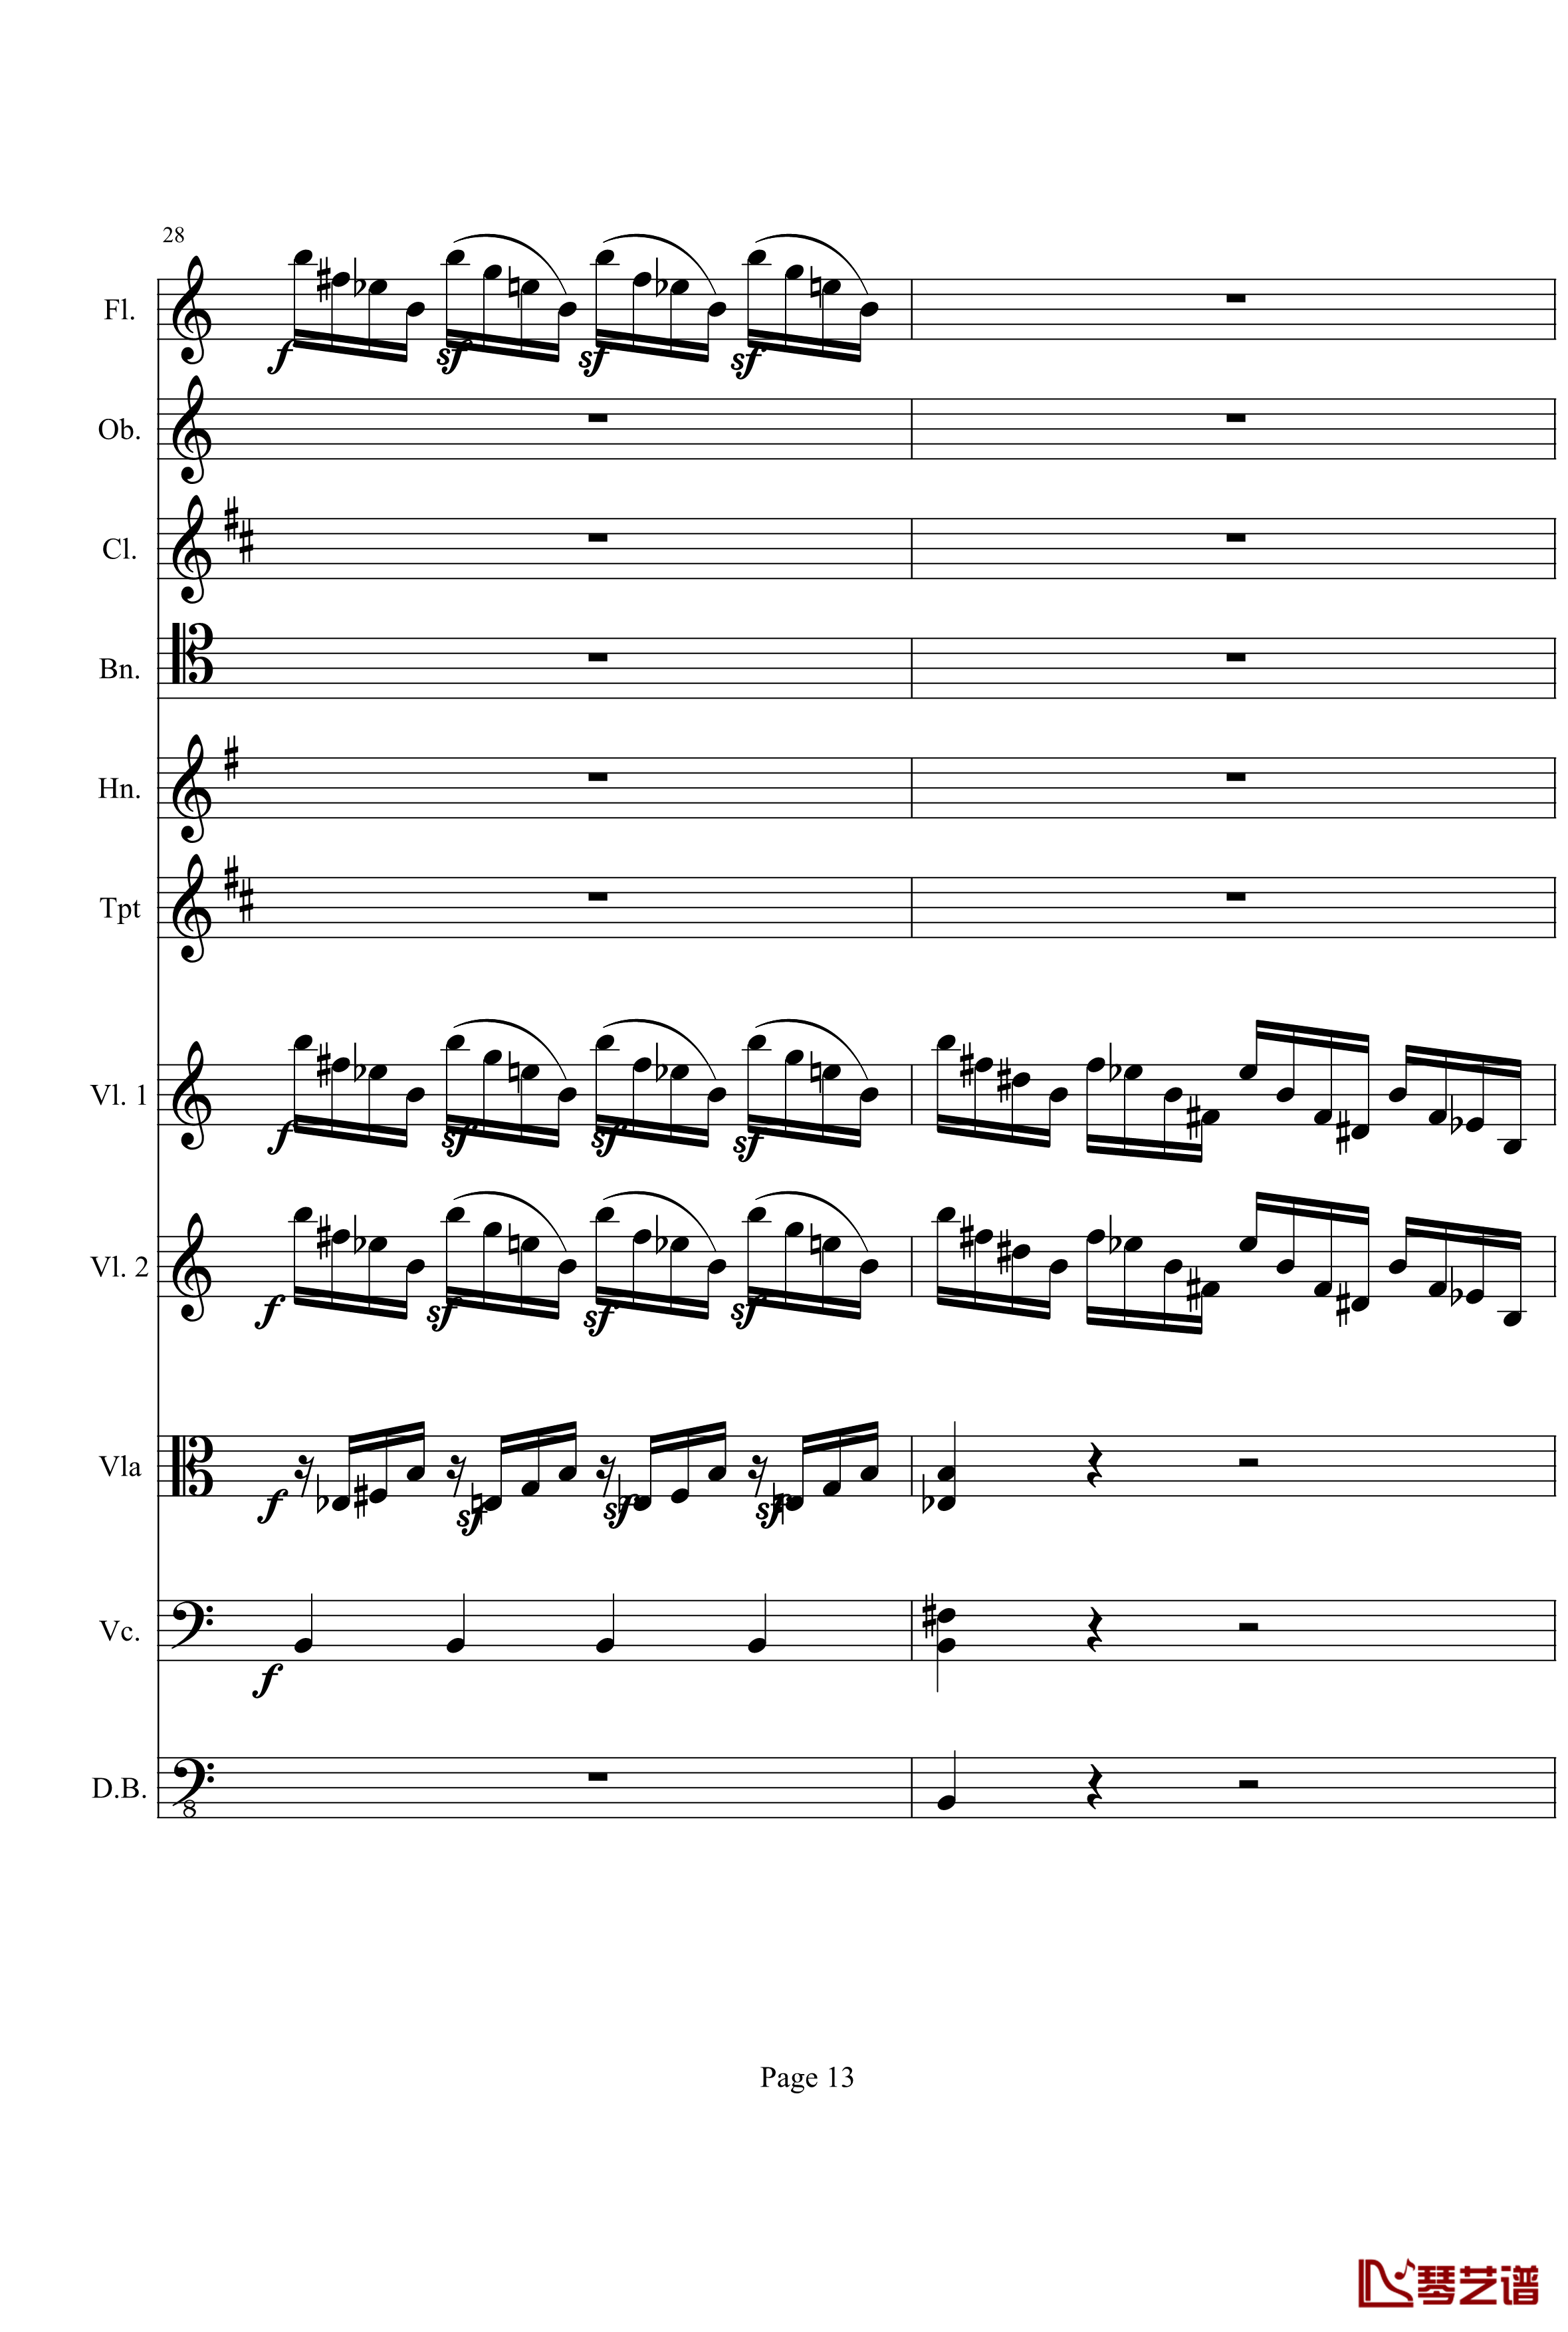 奏鸣曲之交响钢琴谱-第21首-Ⅰ-贝多芬-beethoven13